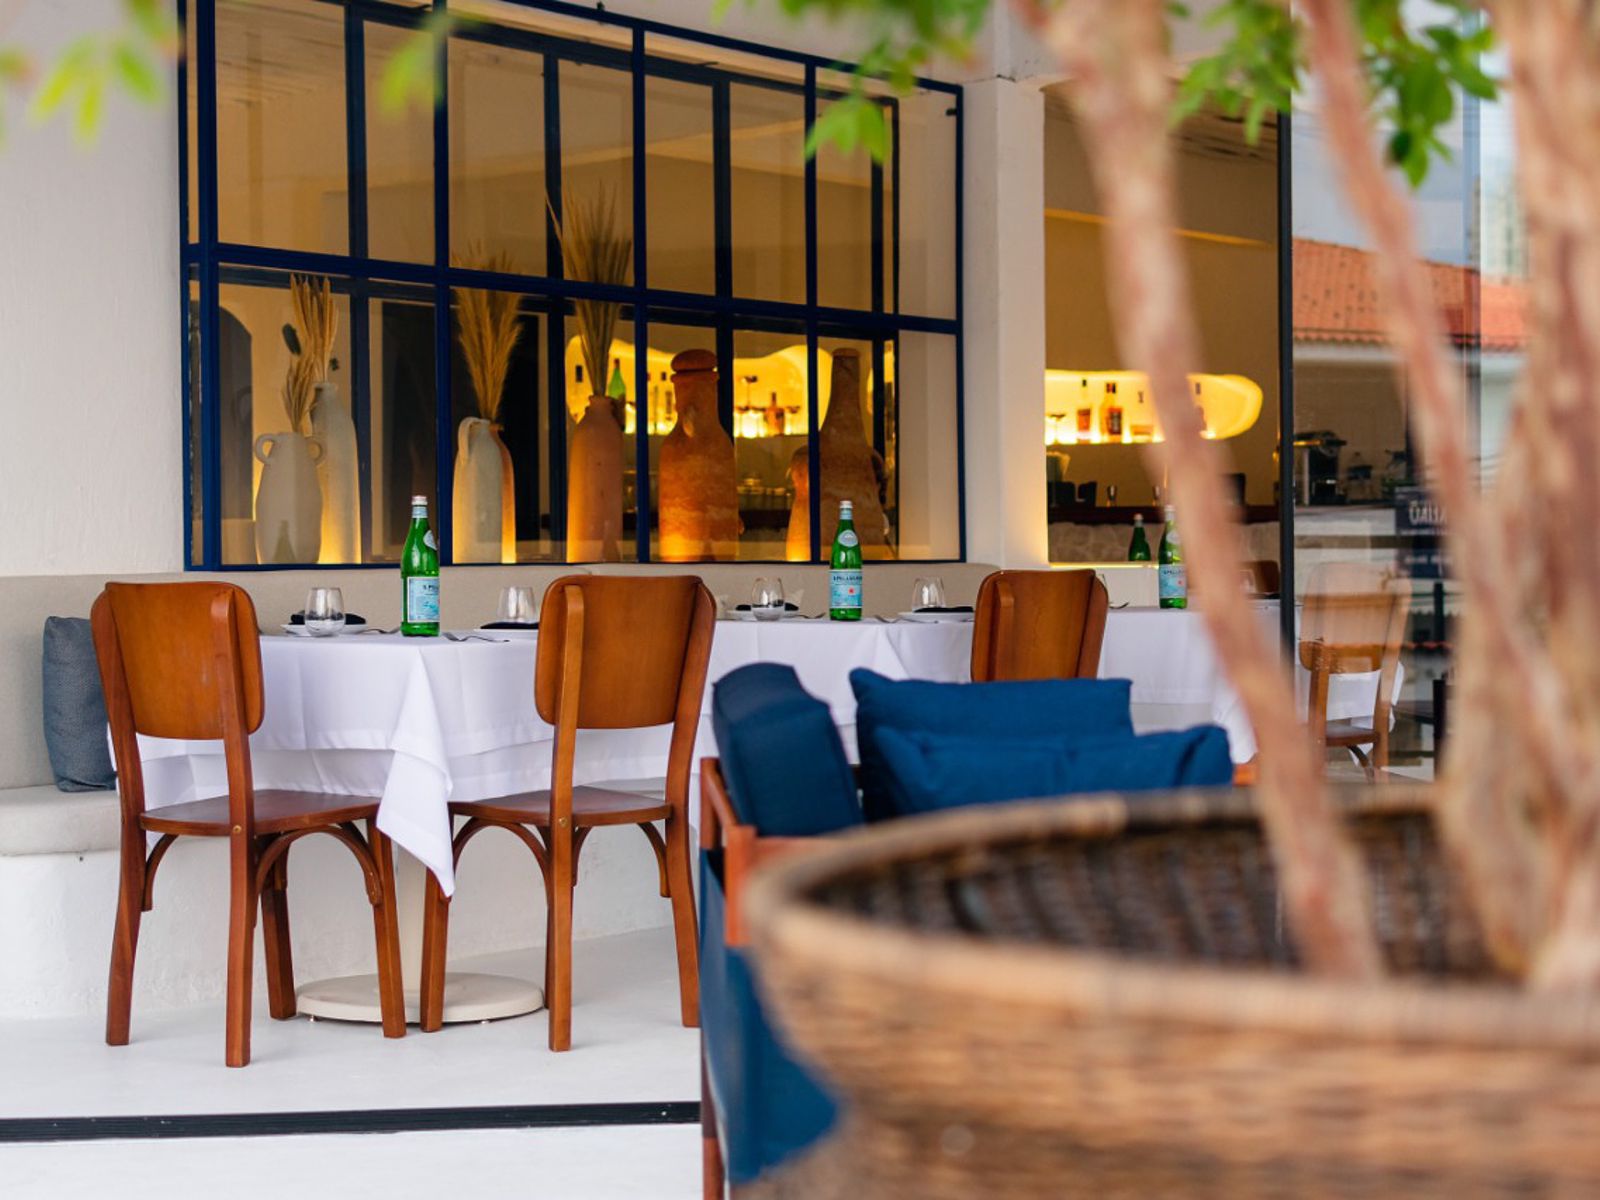 Salvador ganha restaurante contemporâneo inspirado em ilha grega; veja fotos 